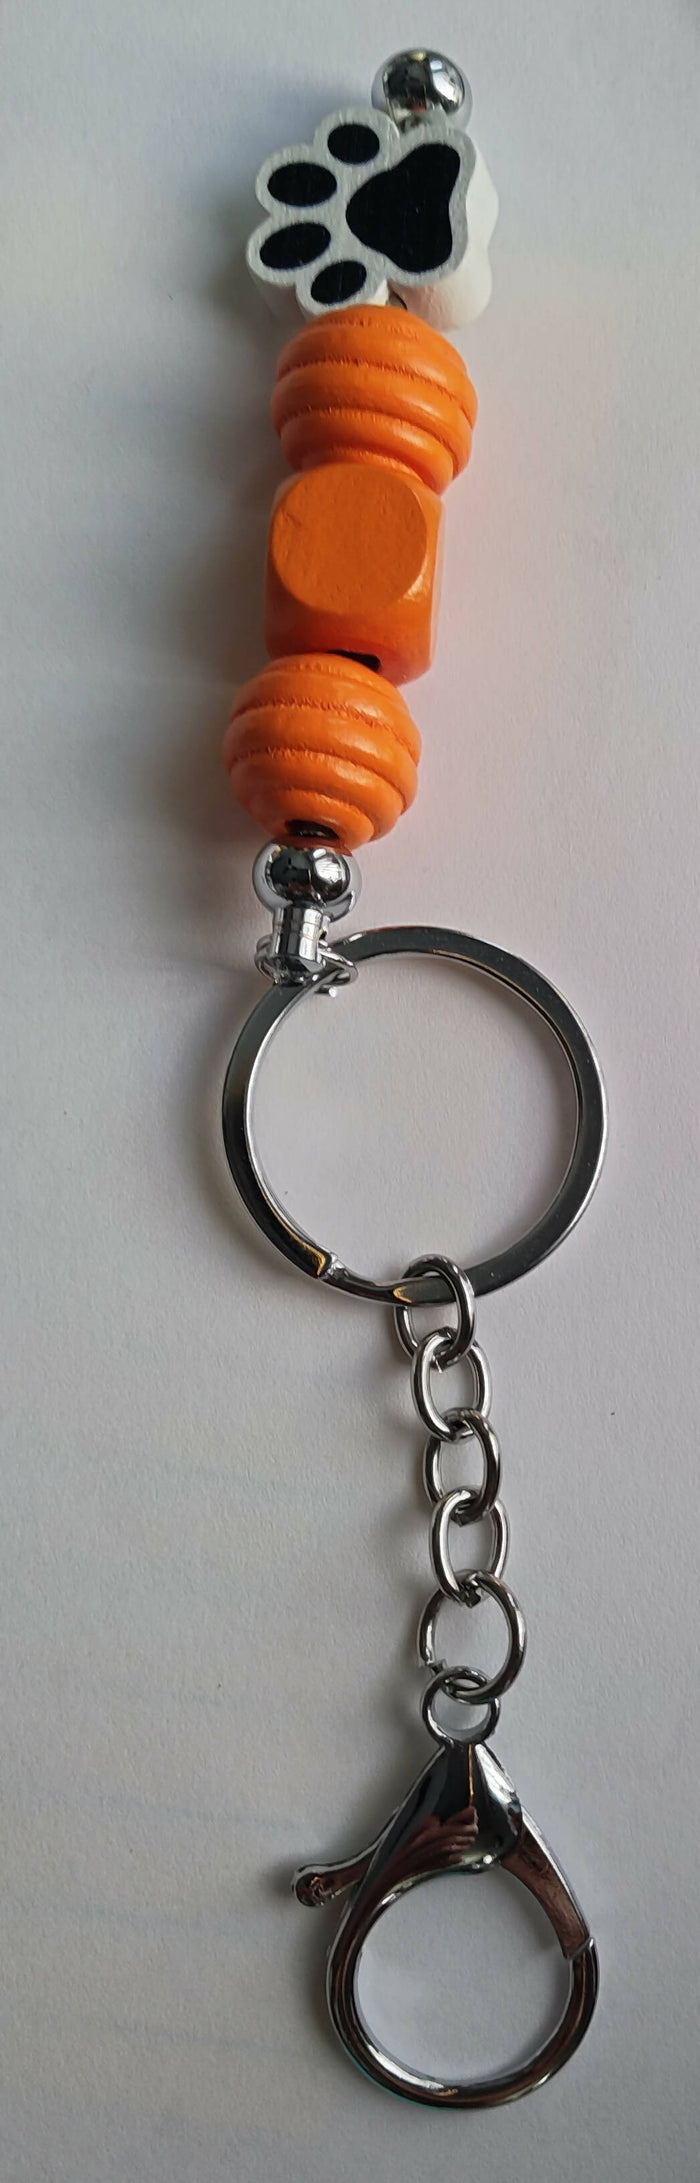 key chain - with dog paw